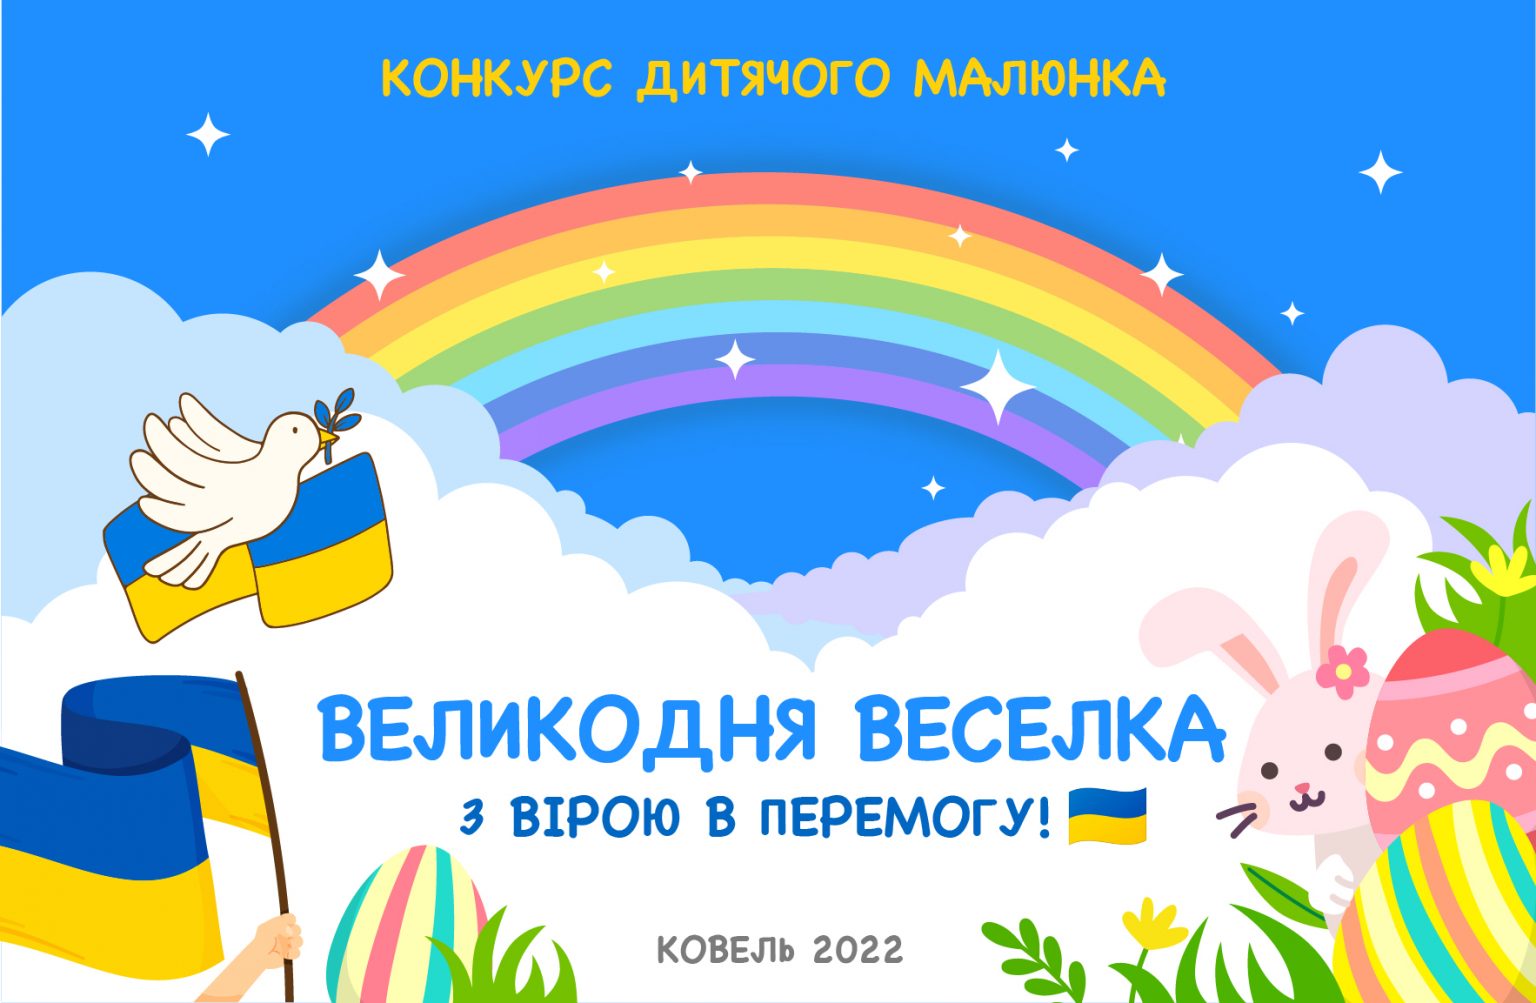 «Великодня веселка»: конкурс малюнків у Ковелі присвятили також героїчній боротьбі українців